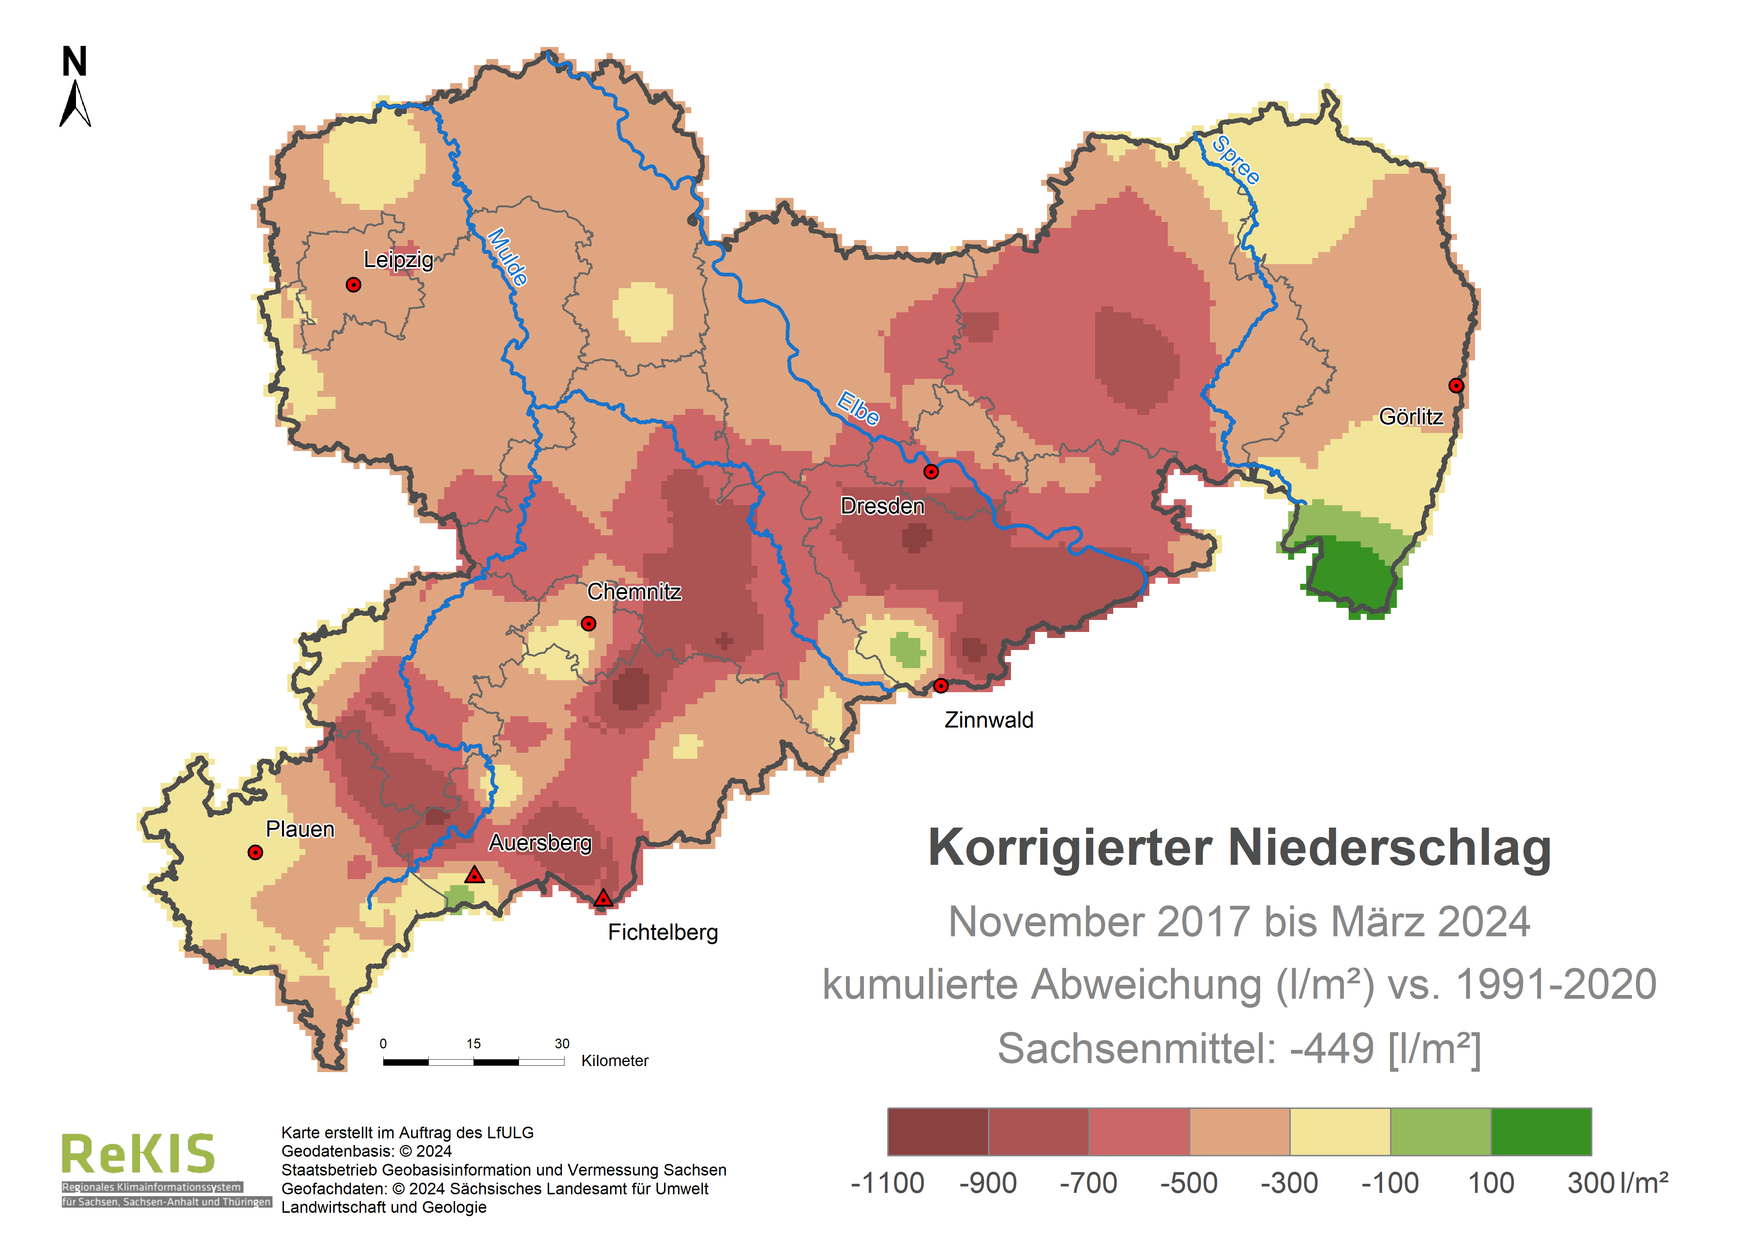 Karte Sachsen mit Darstellung des Niederschlagsdefizits im Vergleich zum Referenzzeitraum 1991 bis 2020